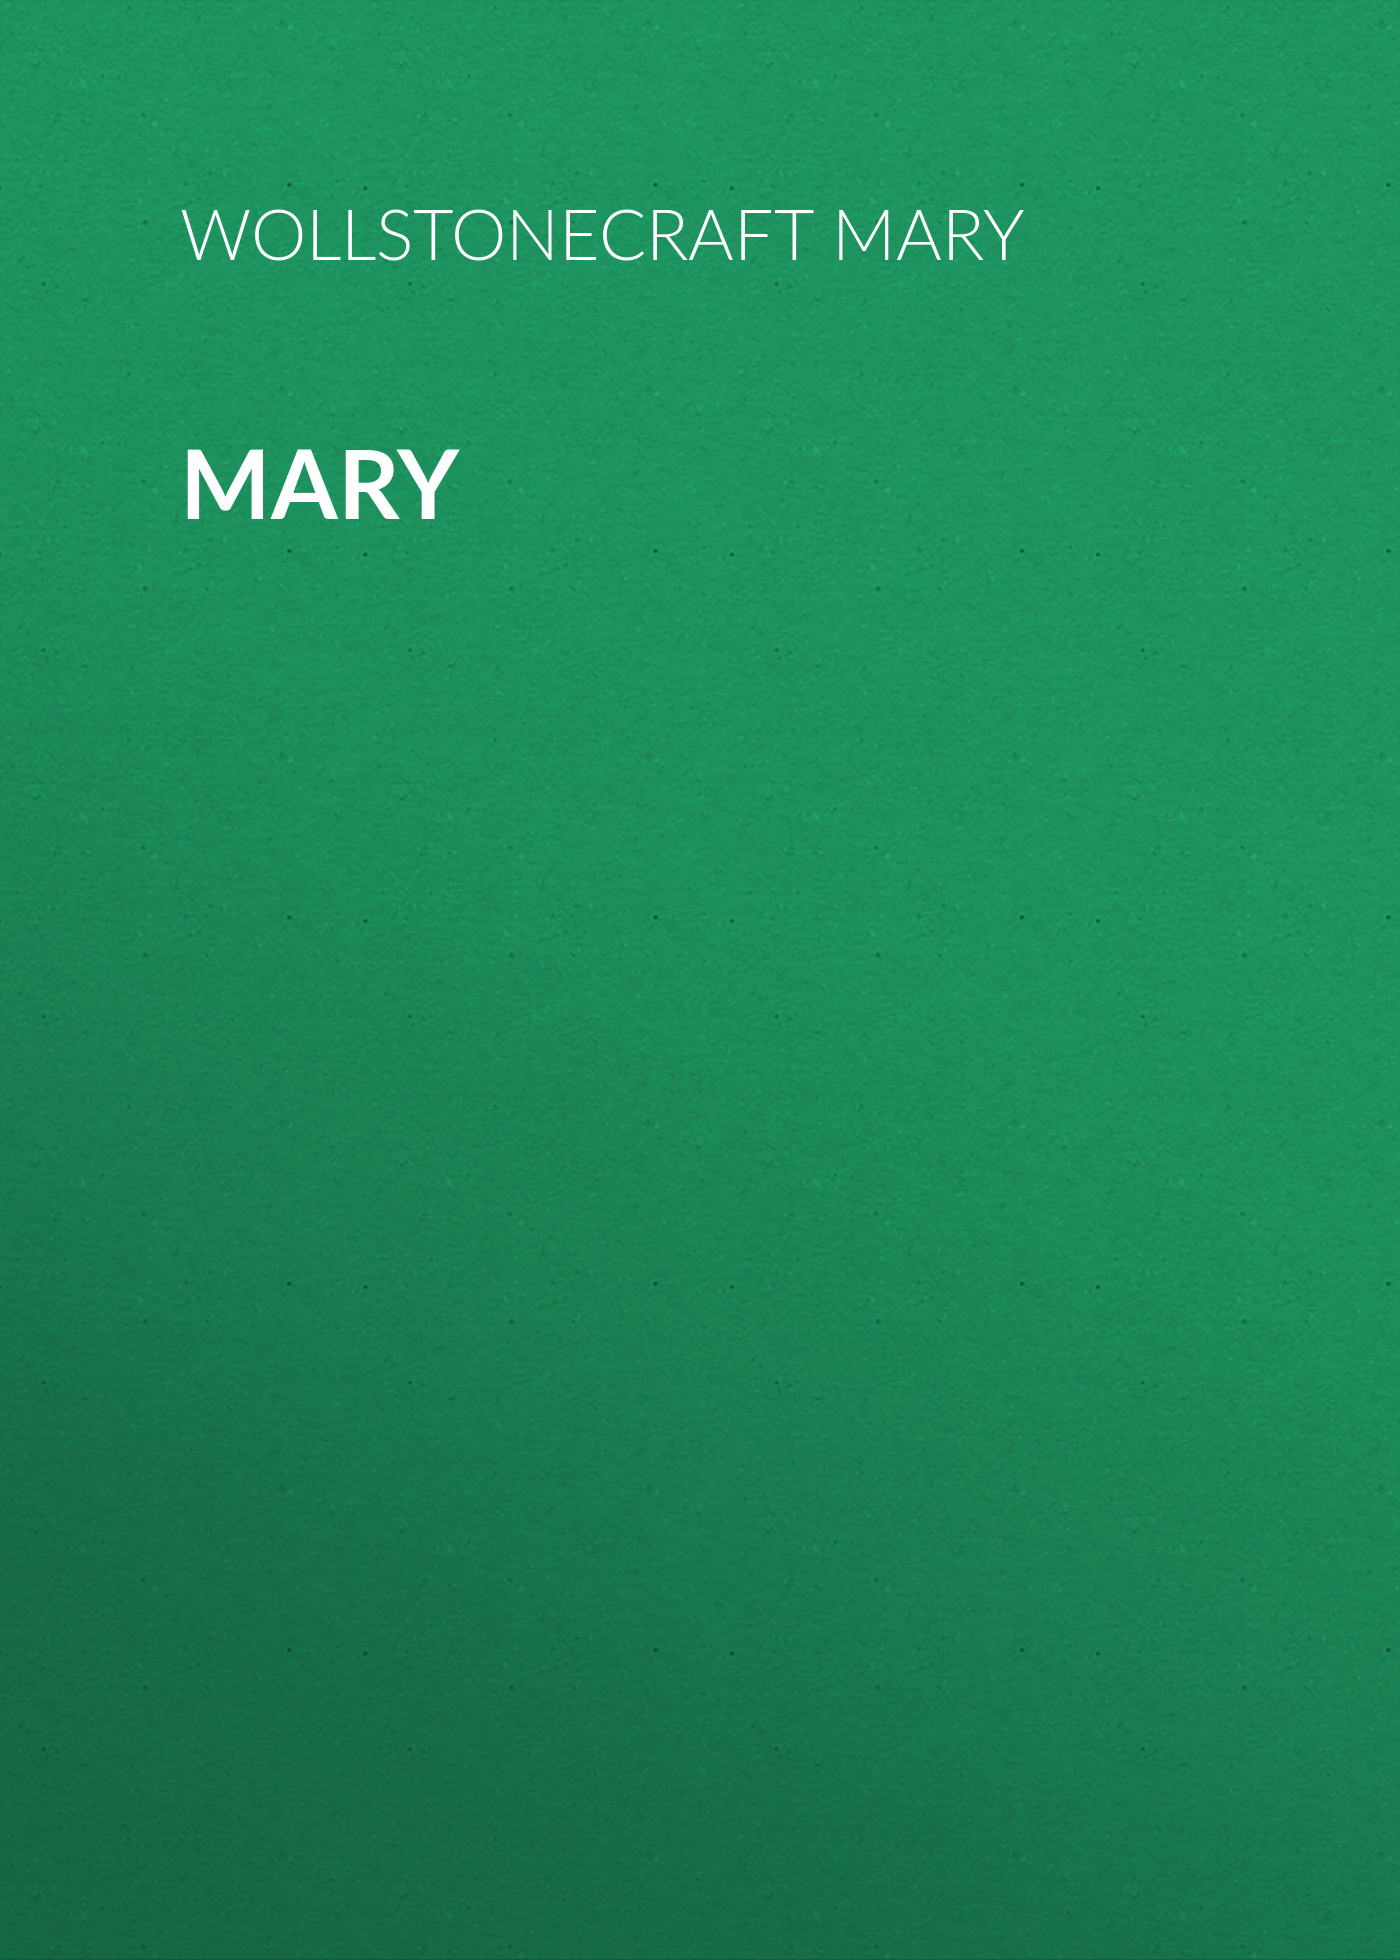 Книга Mary из серии , созданная Mary Wollstonecraft, может относится к жанру Зарубежная фантастика, Литература 18 века, Зарубежная старинная литература, Биографии и Мемуары. Стоимость электронной книги Mary с идентификатором 34842718 составляет 0 руб.